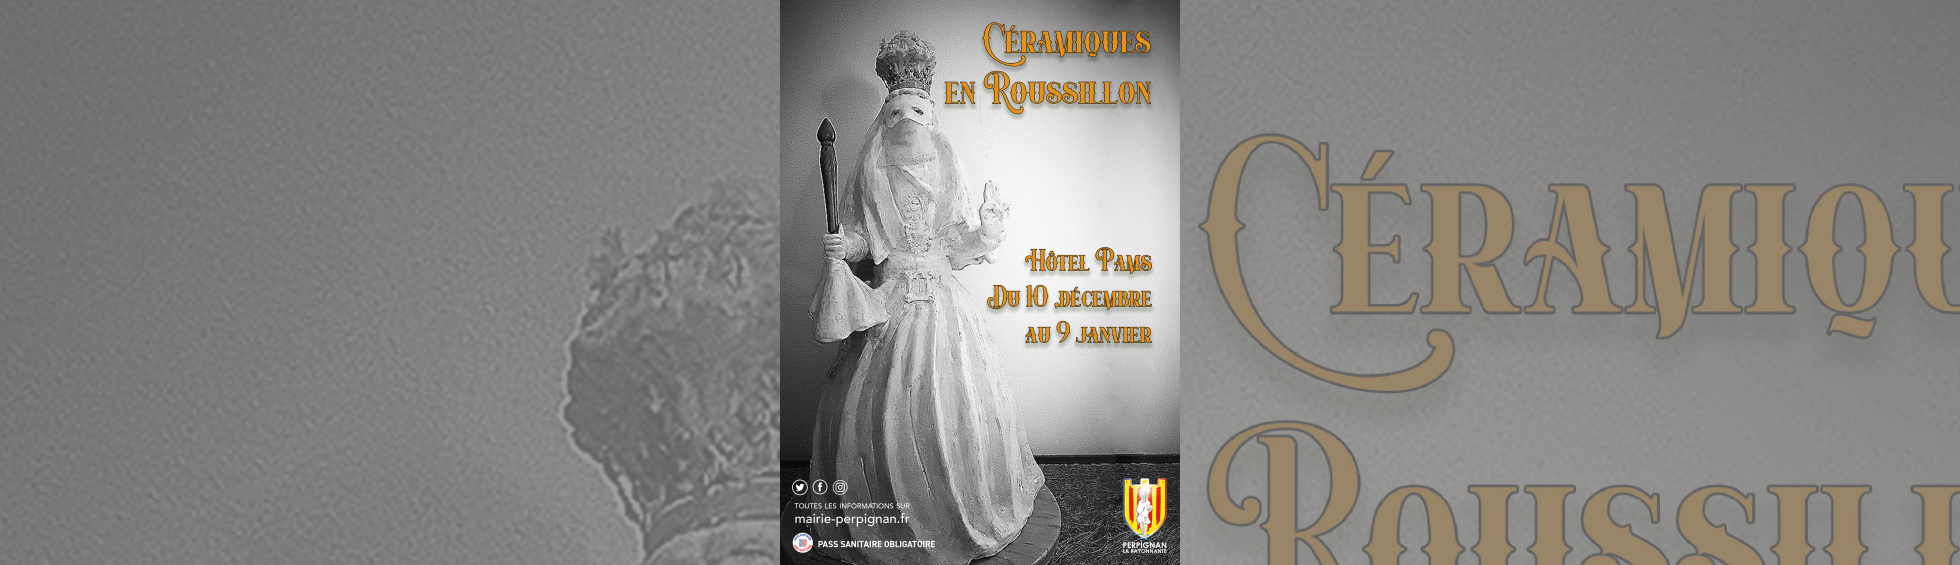 Exposition "Céramiques en Roussillon"